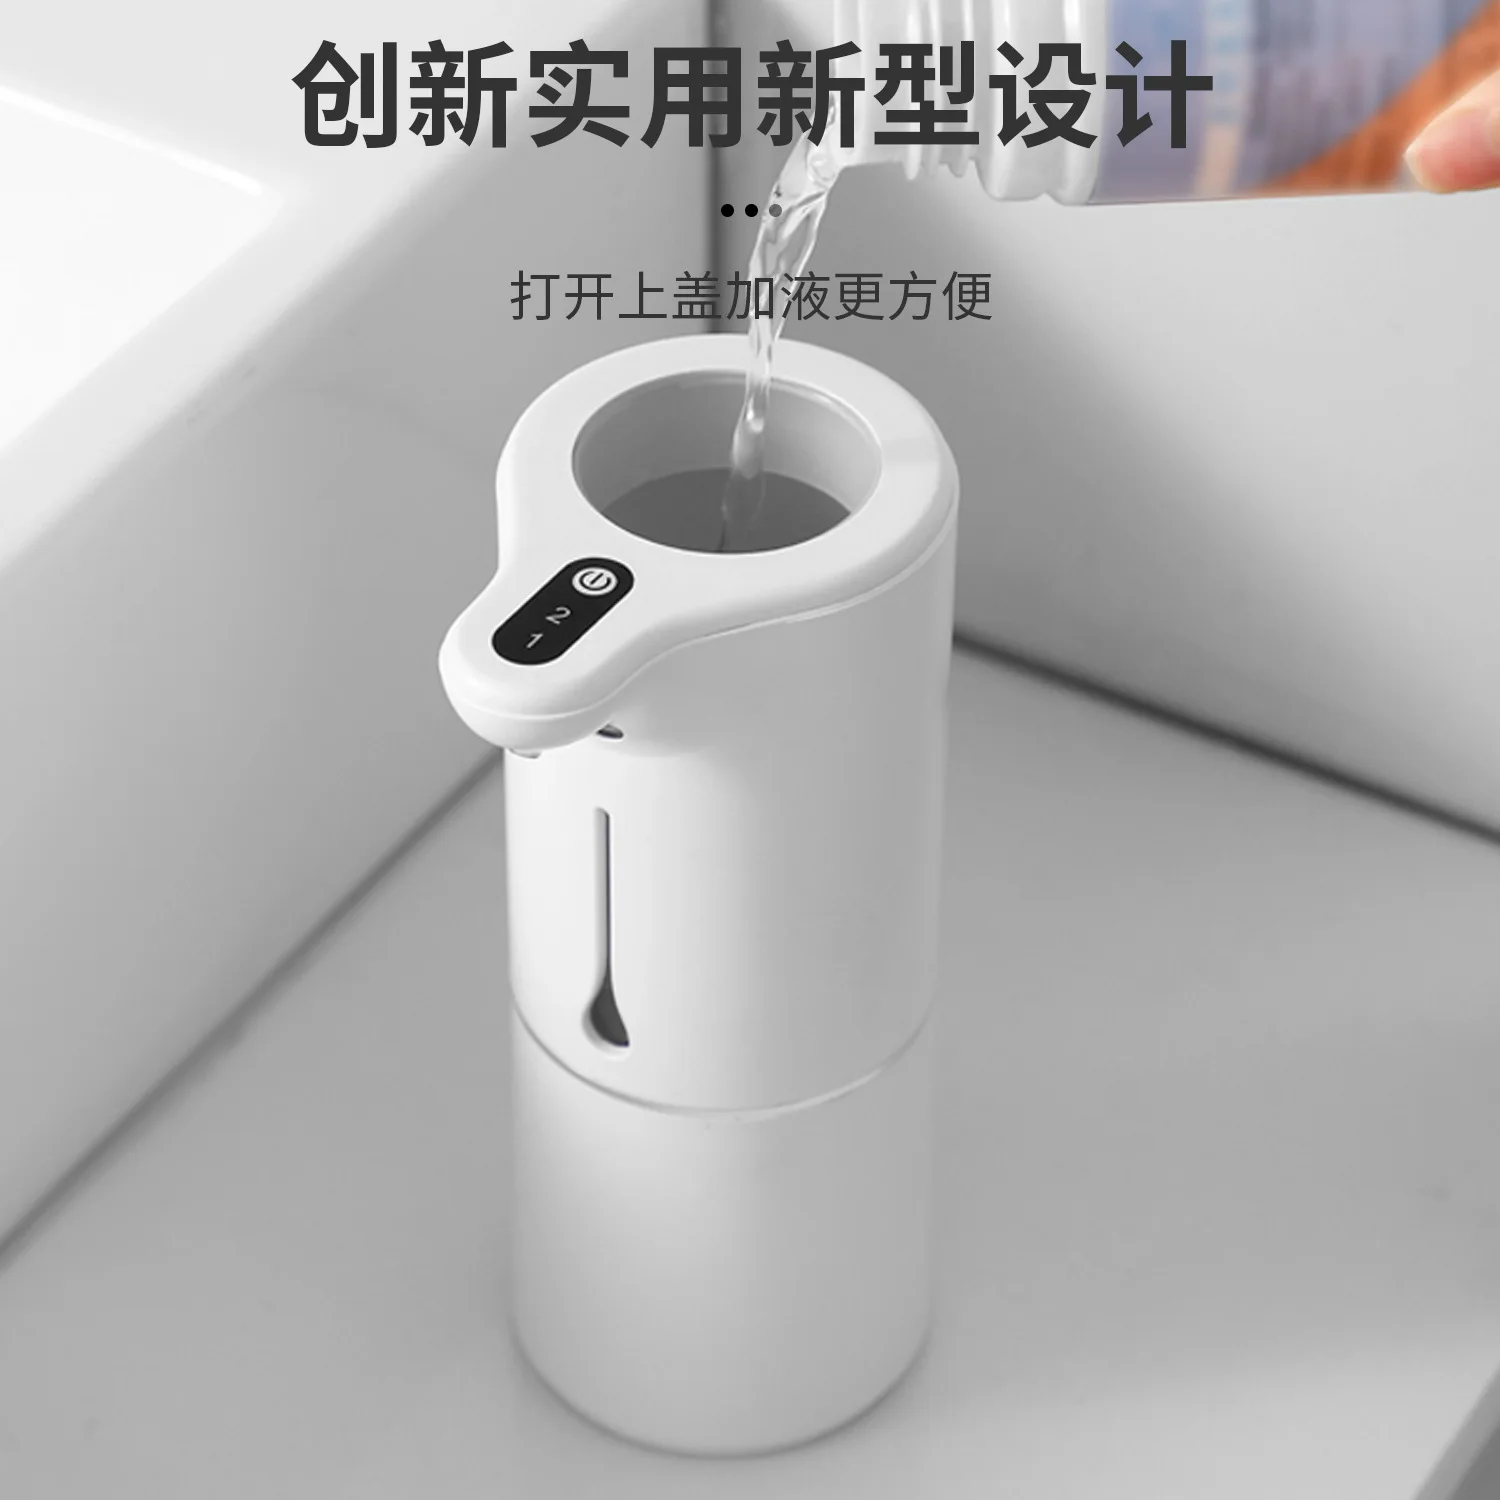 Новая интеллектуальная сенсорная пенная мойка для рук Xiaomi, водонепроницаемая бесконтактная мойка для рук для домашней ванной комнаты, кухни Изображение 3 